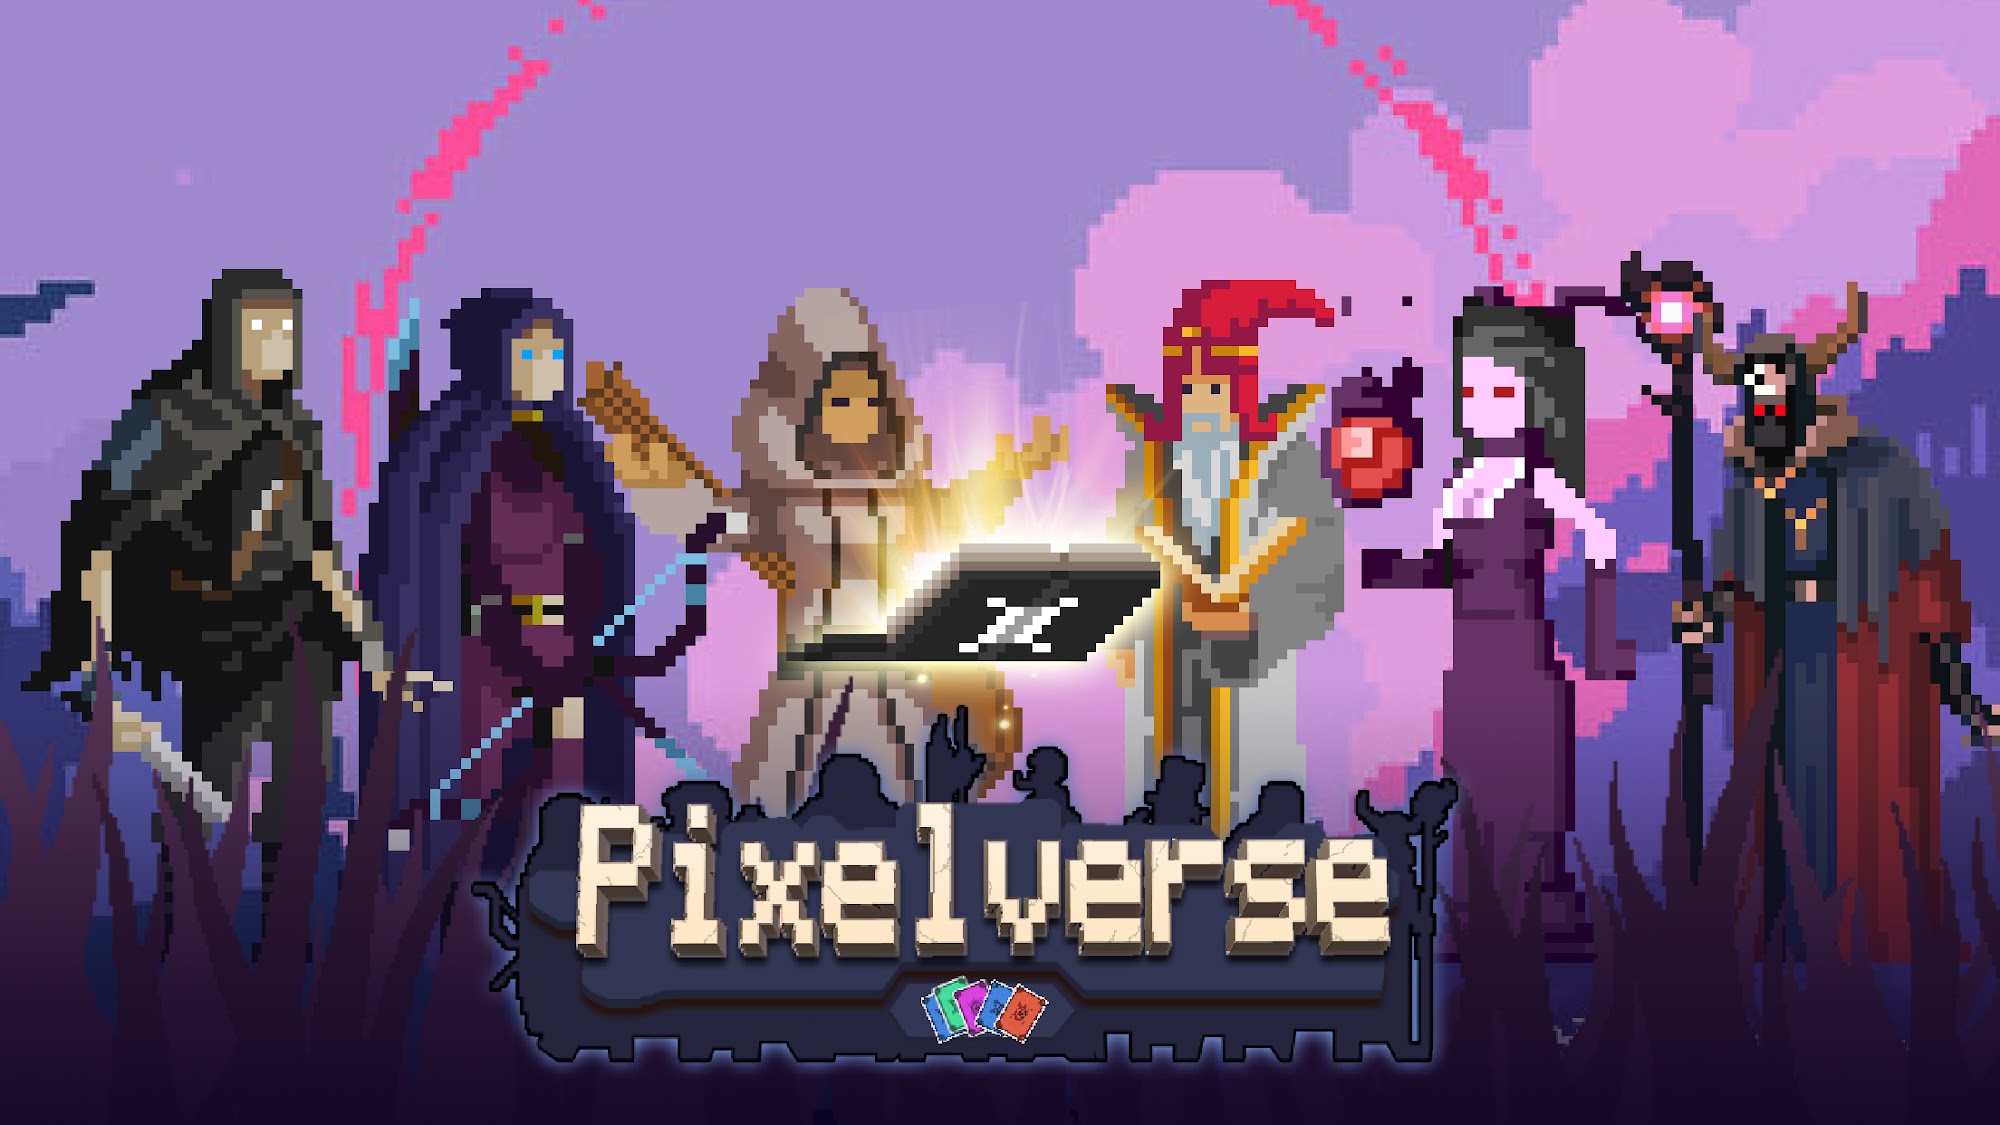 Télécharger Pixelverse - Deck Heroes pour Android gratuit.